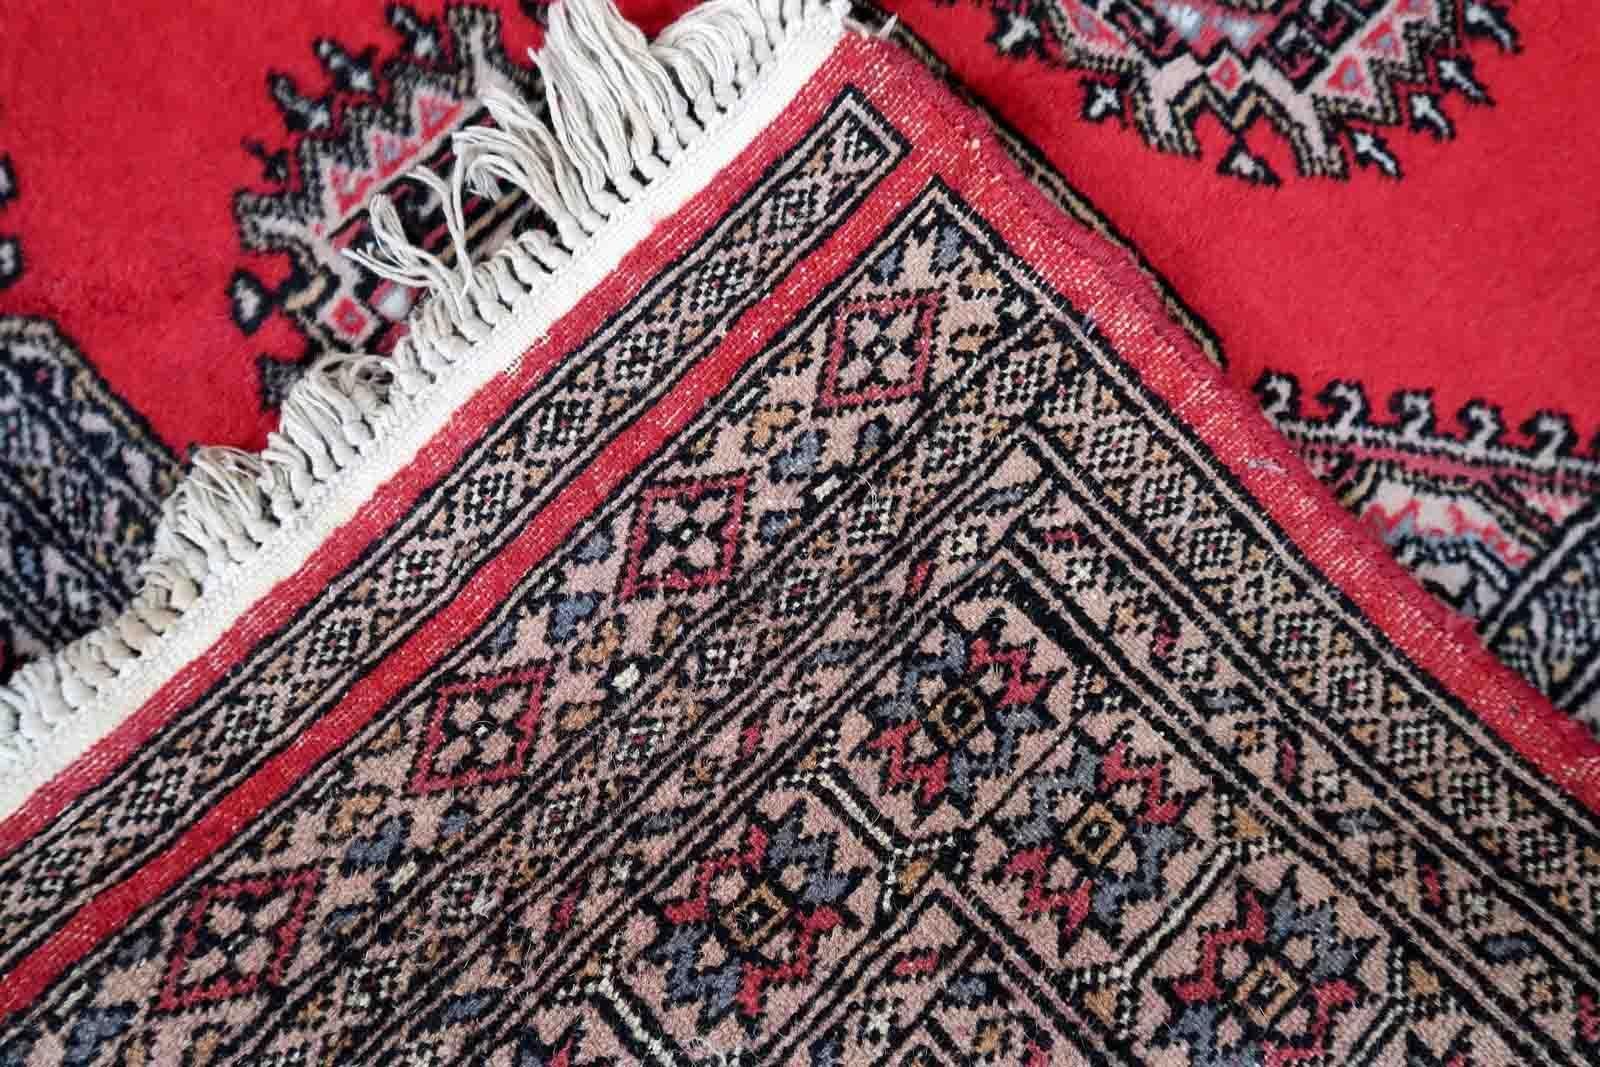 Handgefertigter usbekischer Buchara-Teppich in roter Farbe. Der Teppich wurde Ende des 20. Jahrhunderts aus Wolle hergestellt. Er ist im Originalzustand, hat aber einige Altersspuren.

-zustand: original, einige Altersspuren,

-etwa: 1970er